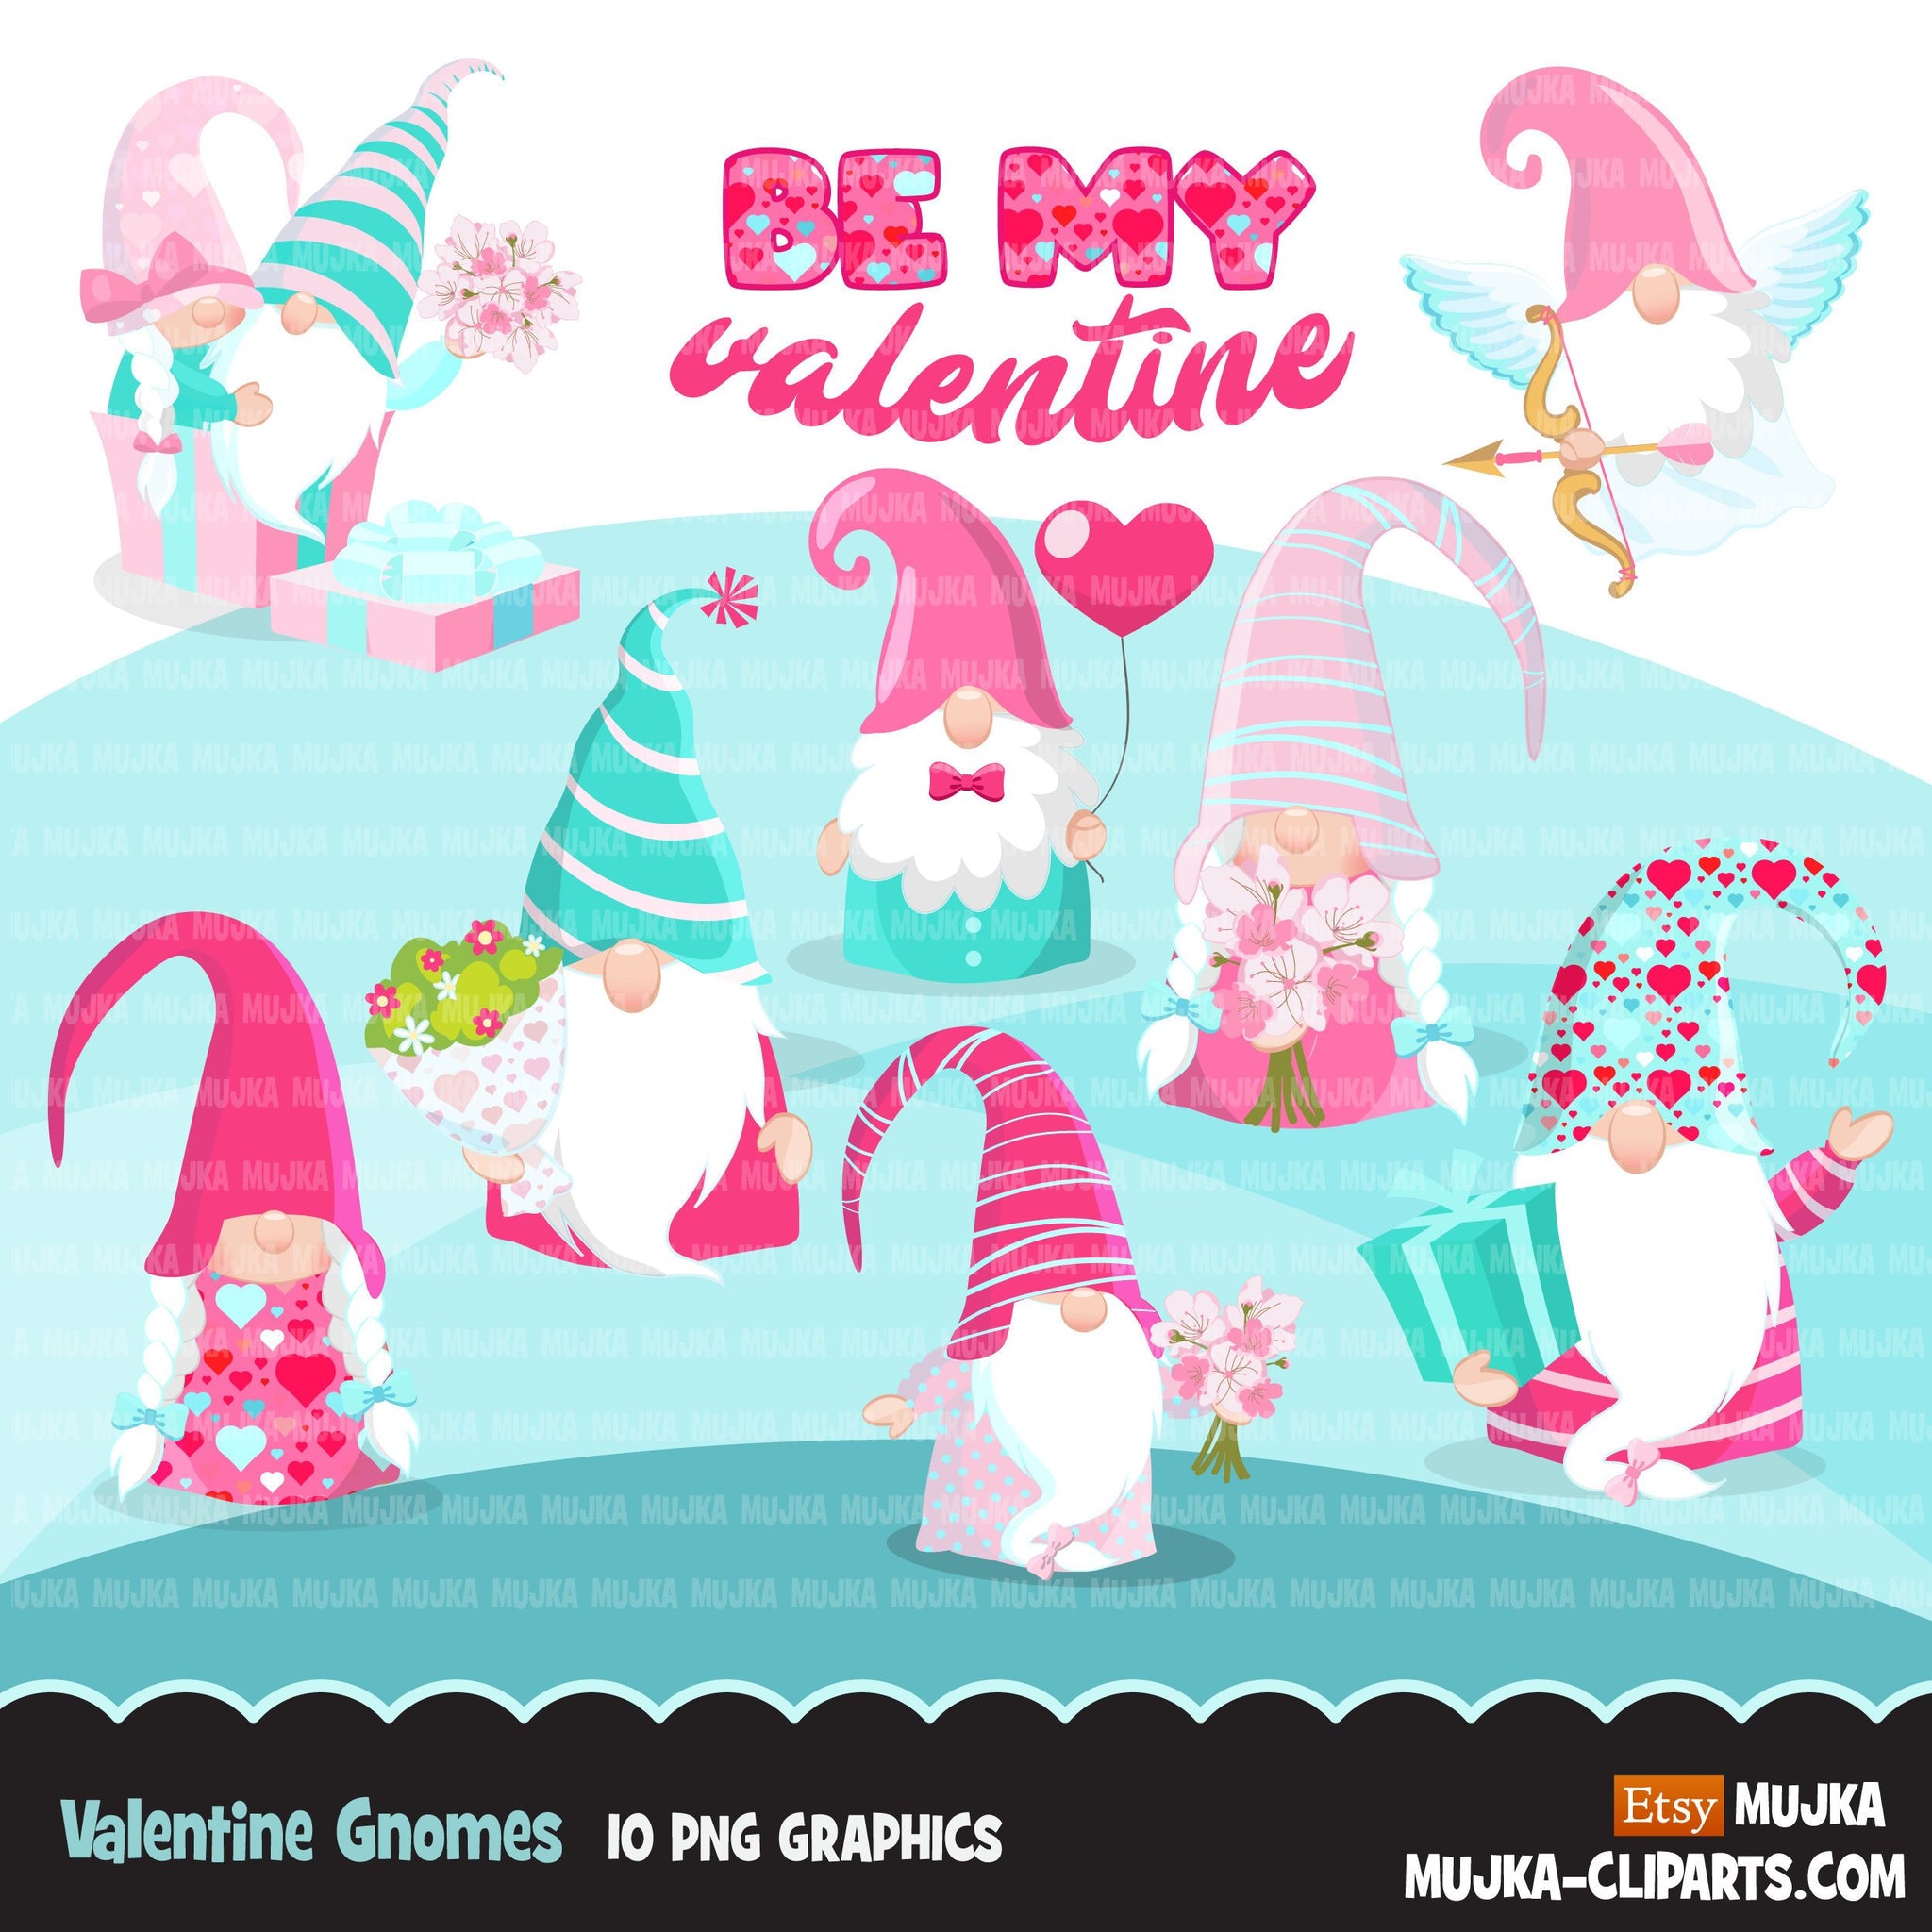 Valentine gnomes Clipart, Be my Valentine Gnome gráficos, personajes del Día de San Valentín, ramo de uso comercial clip art